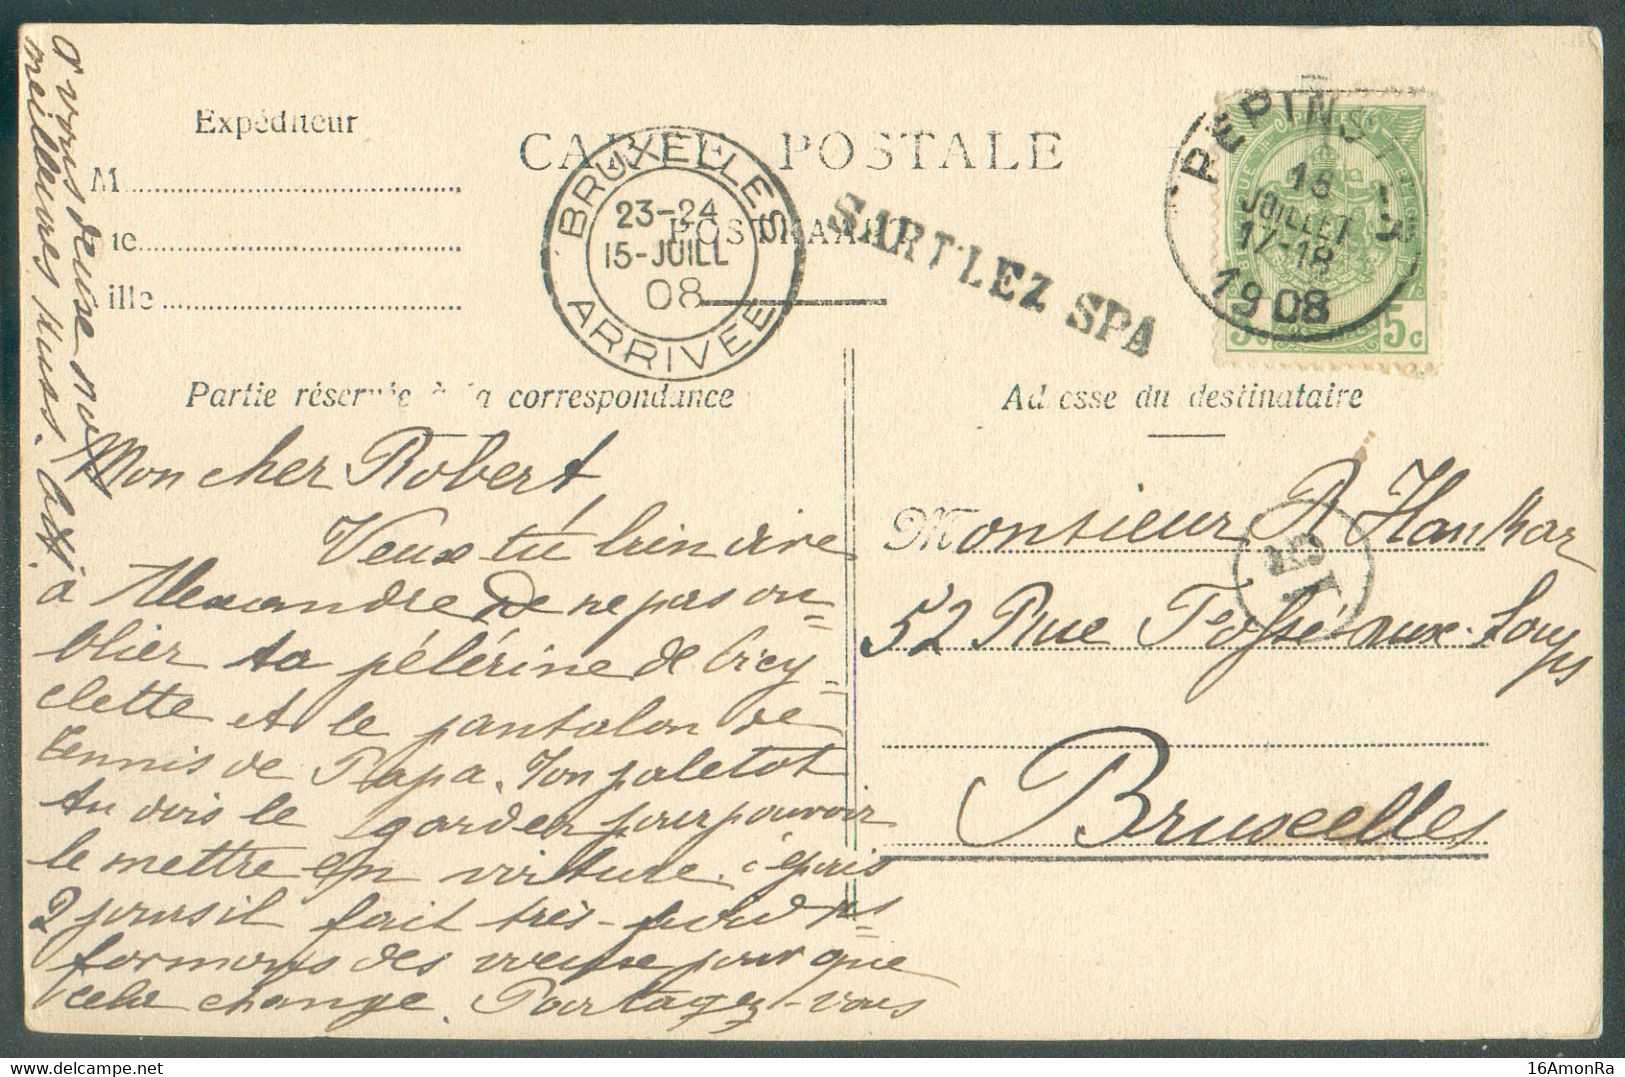 N°83 - 5 Centimes Obl. Sc PEPINSTER sur C.P. Du 18 Juillet 1908 + Griffe SART LEZ SPA vers Bruxelles.  Rare - 18068 - Linear Postmarks